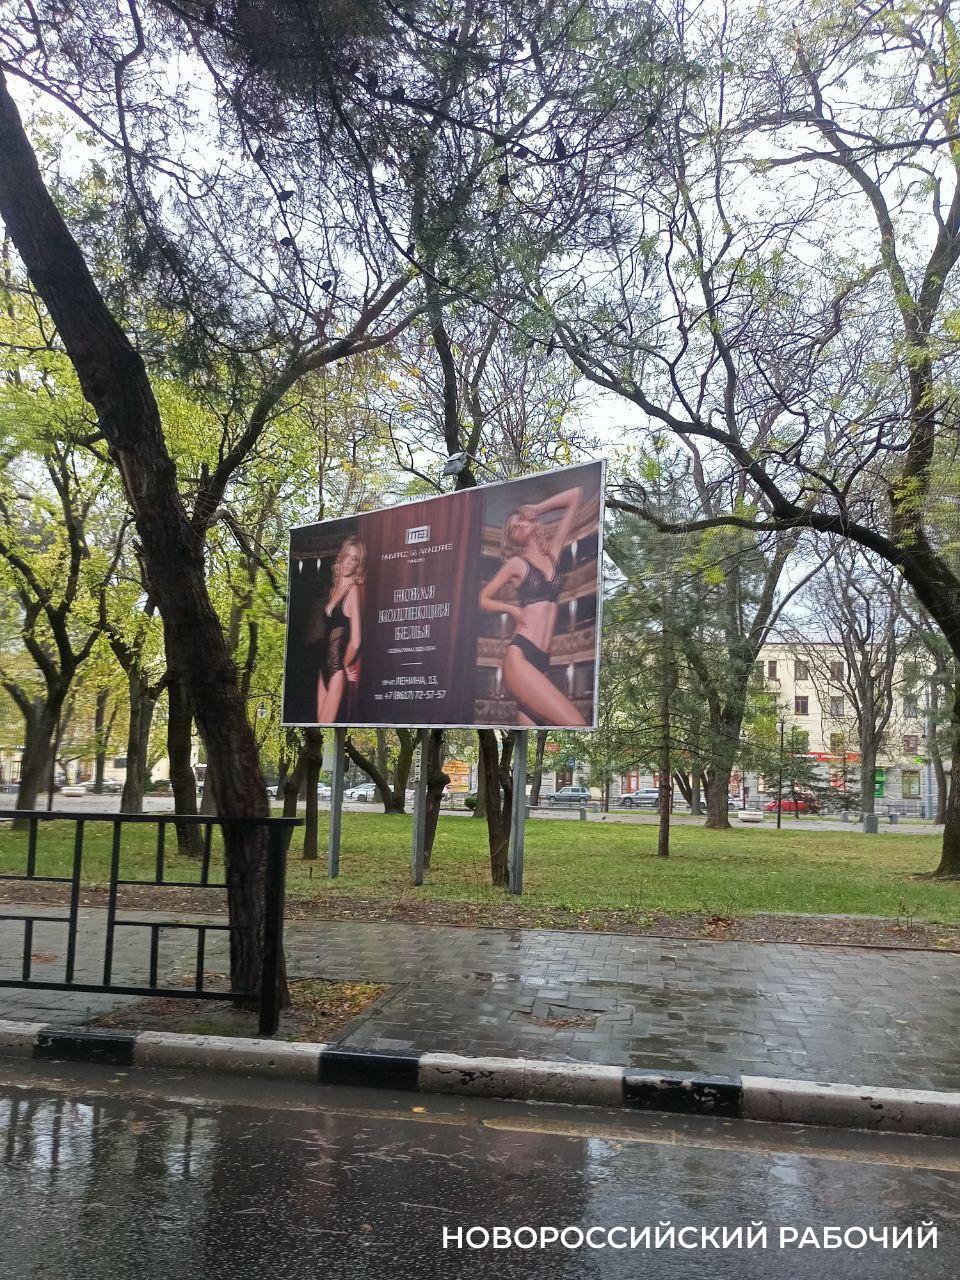 Можно ли говорить в Новороссийске о духовно-нравственном воспитании и вывешивать на улицах рекламу нижнего белья